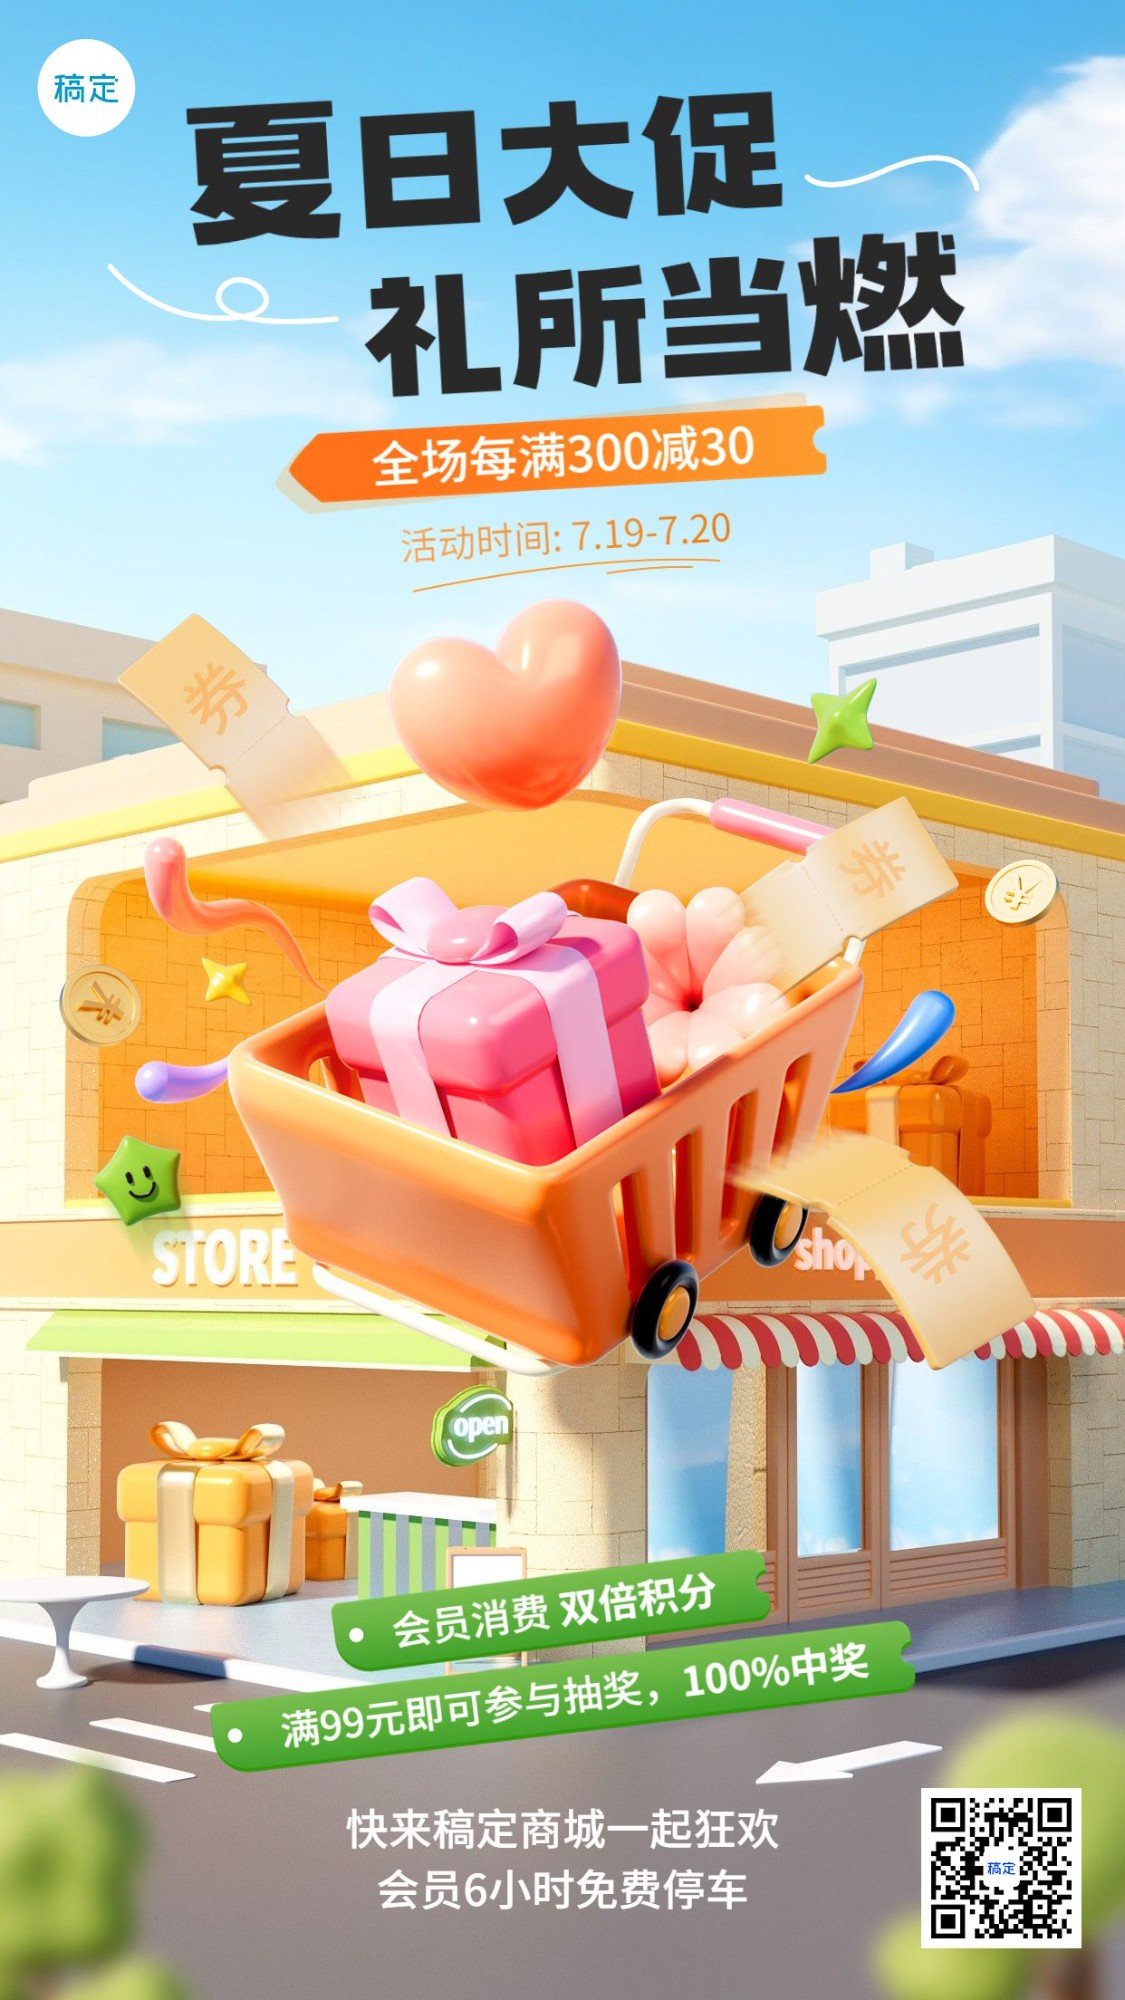 商品零售商场超市百货促销活动3D竖版手机海报